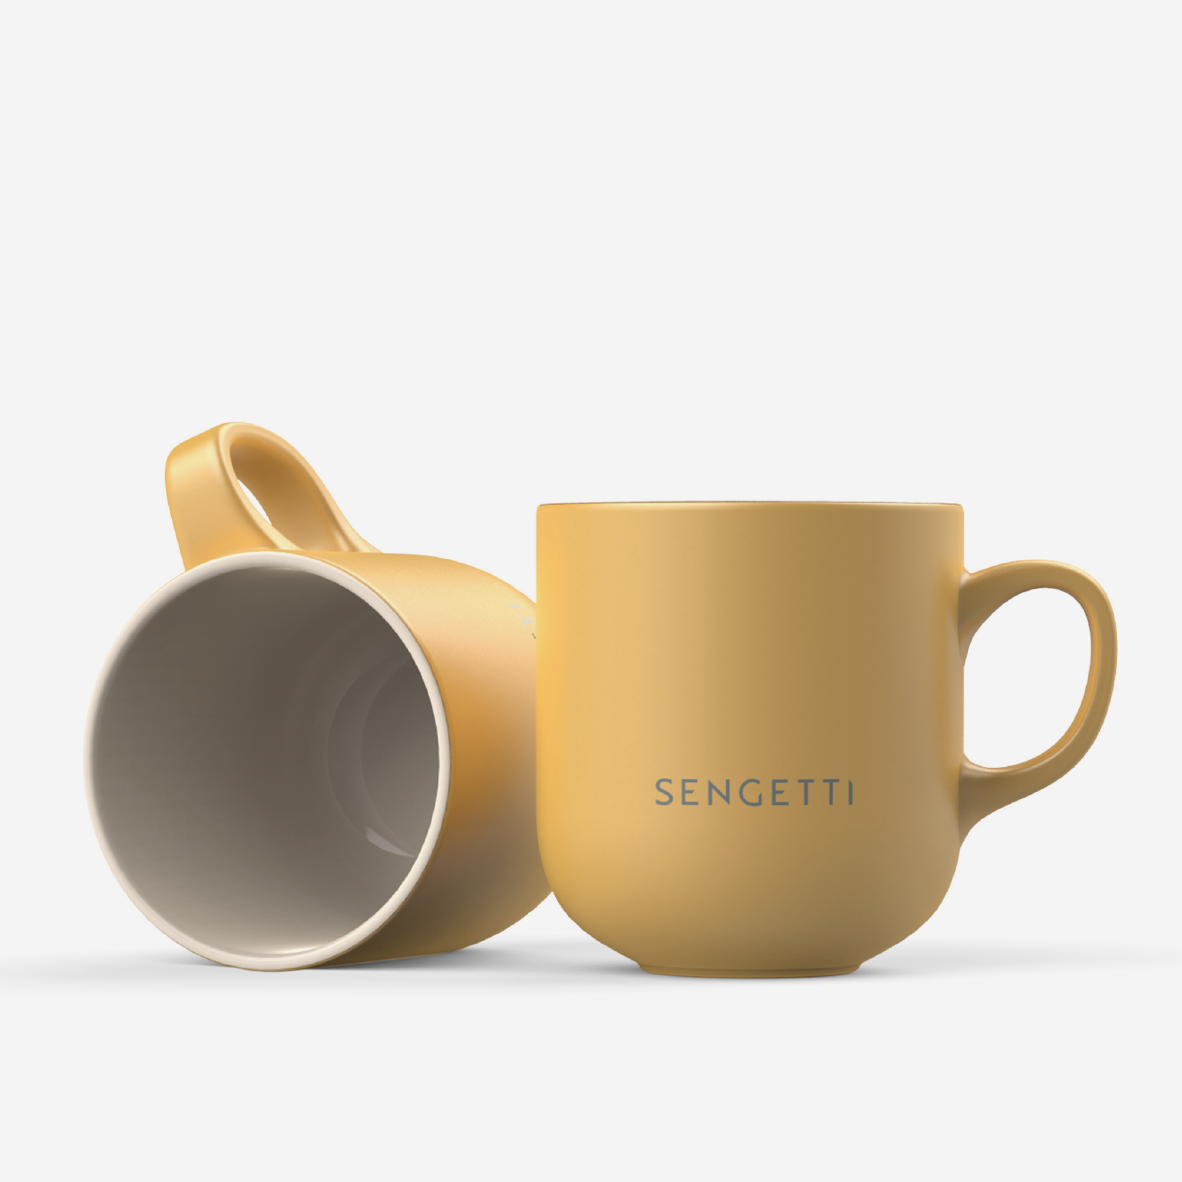 The Perfect Mug - Set Of 2